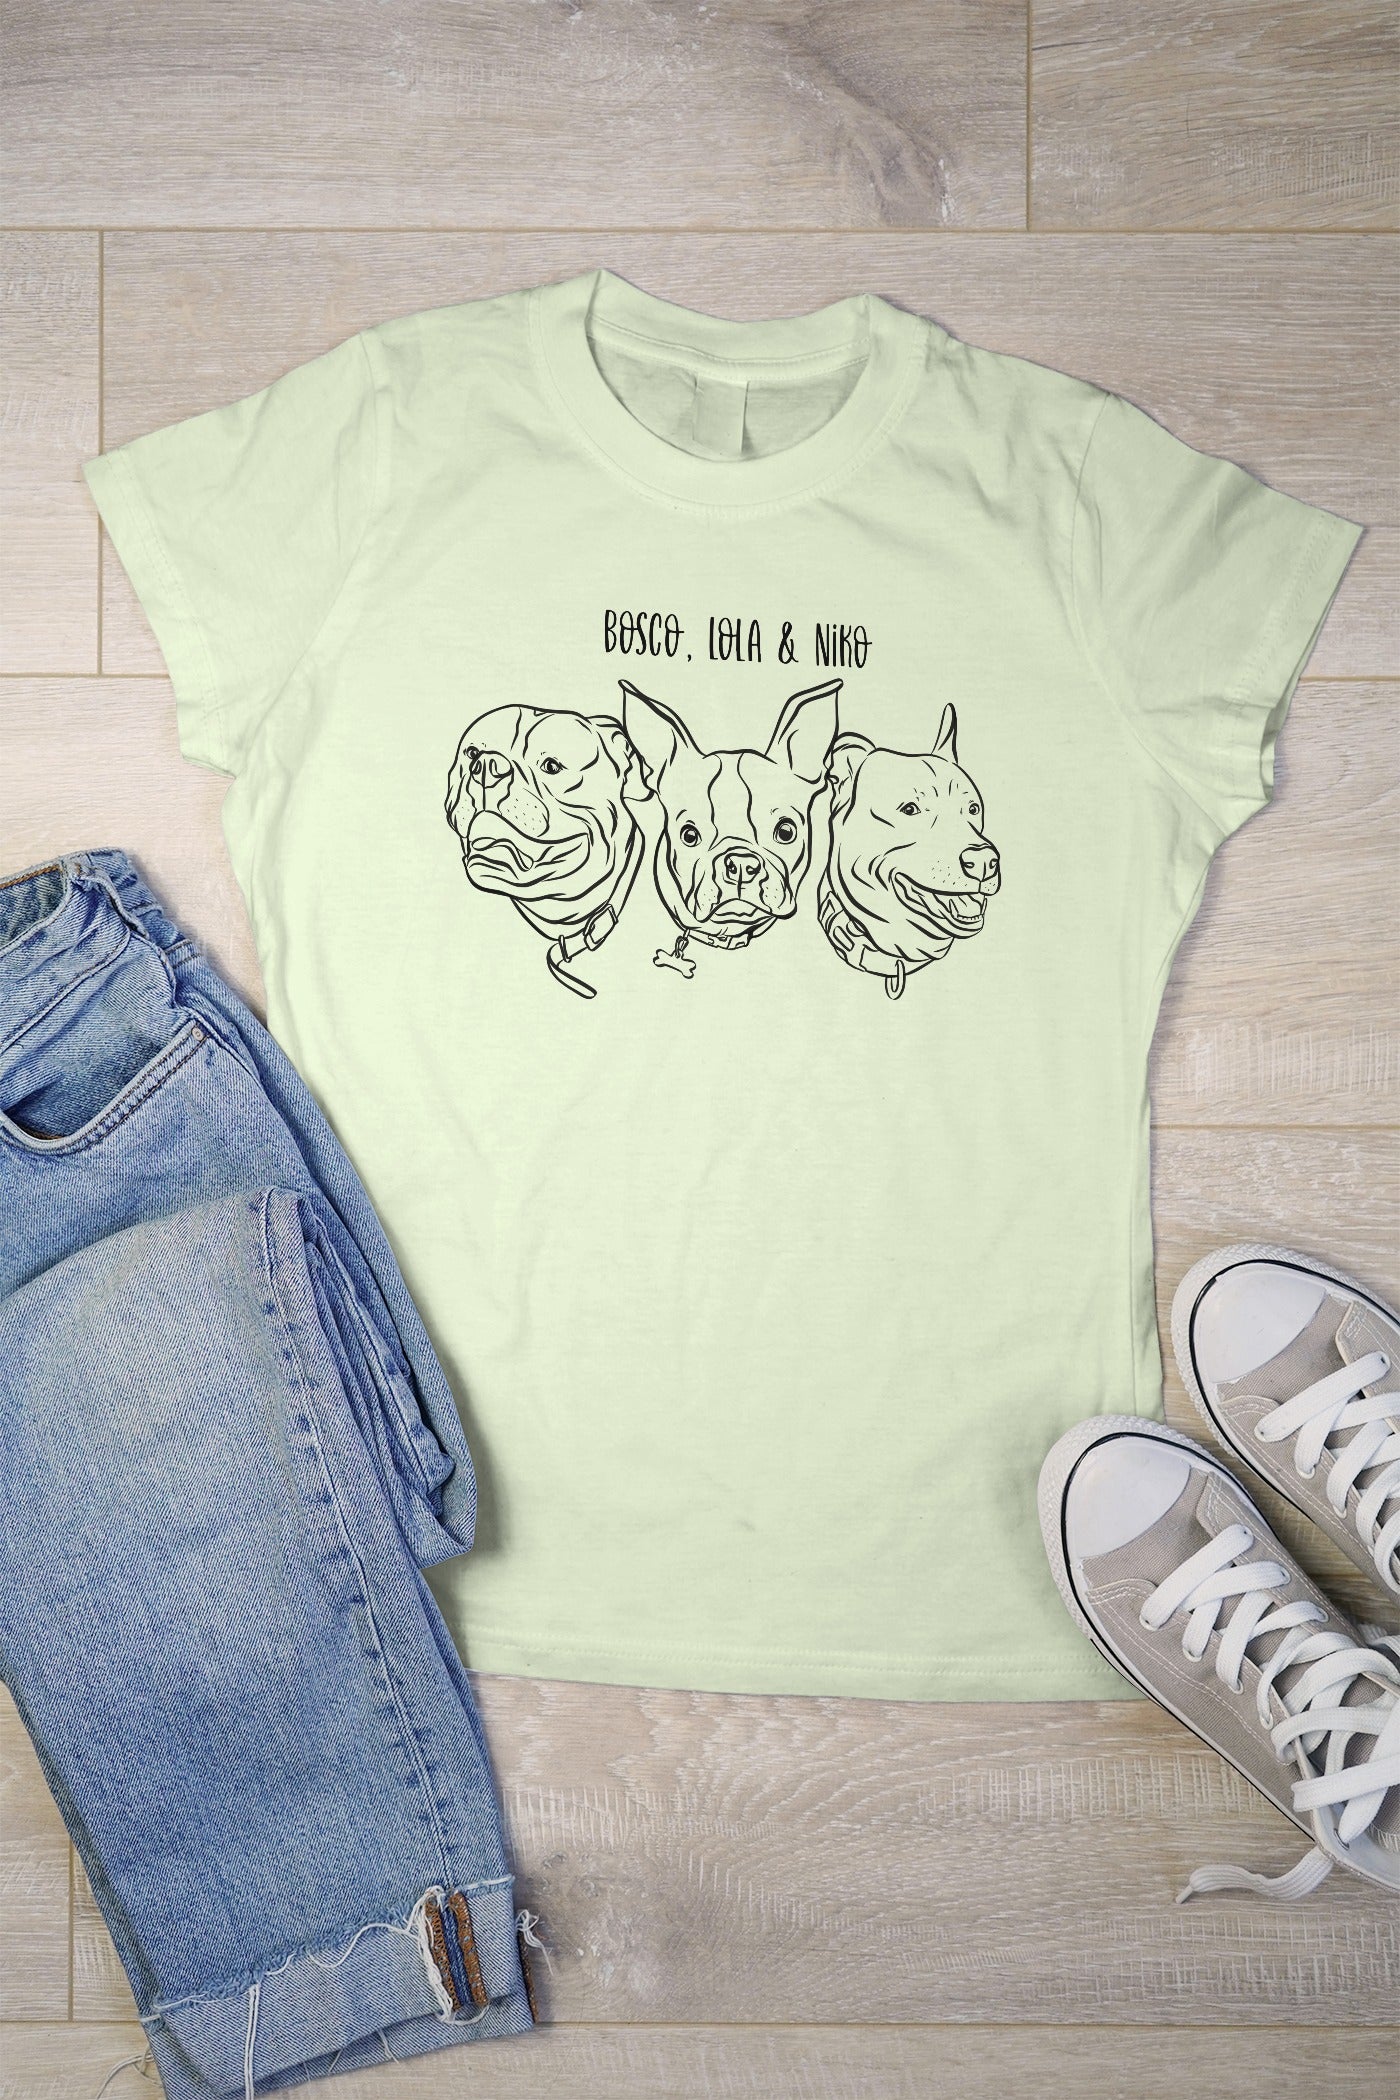 Outline Pet Portrait T-Shirt (Sage Green)